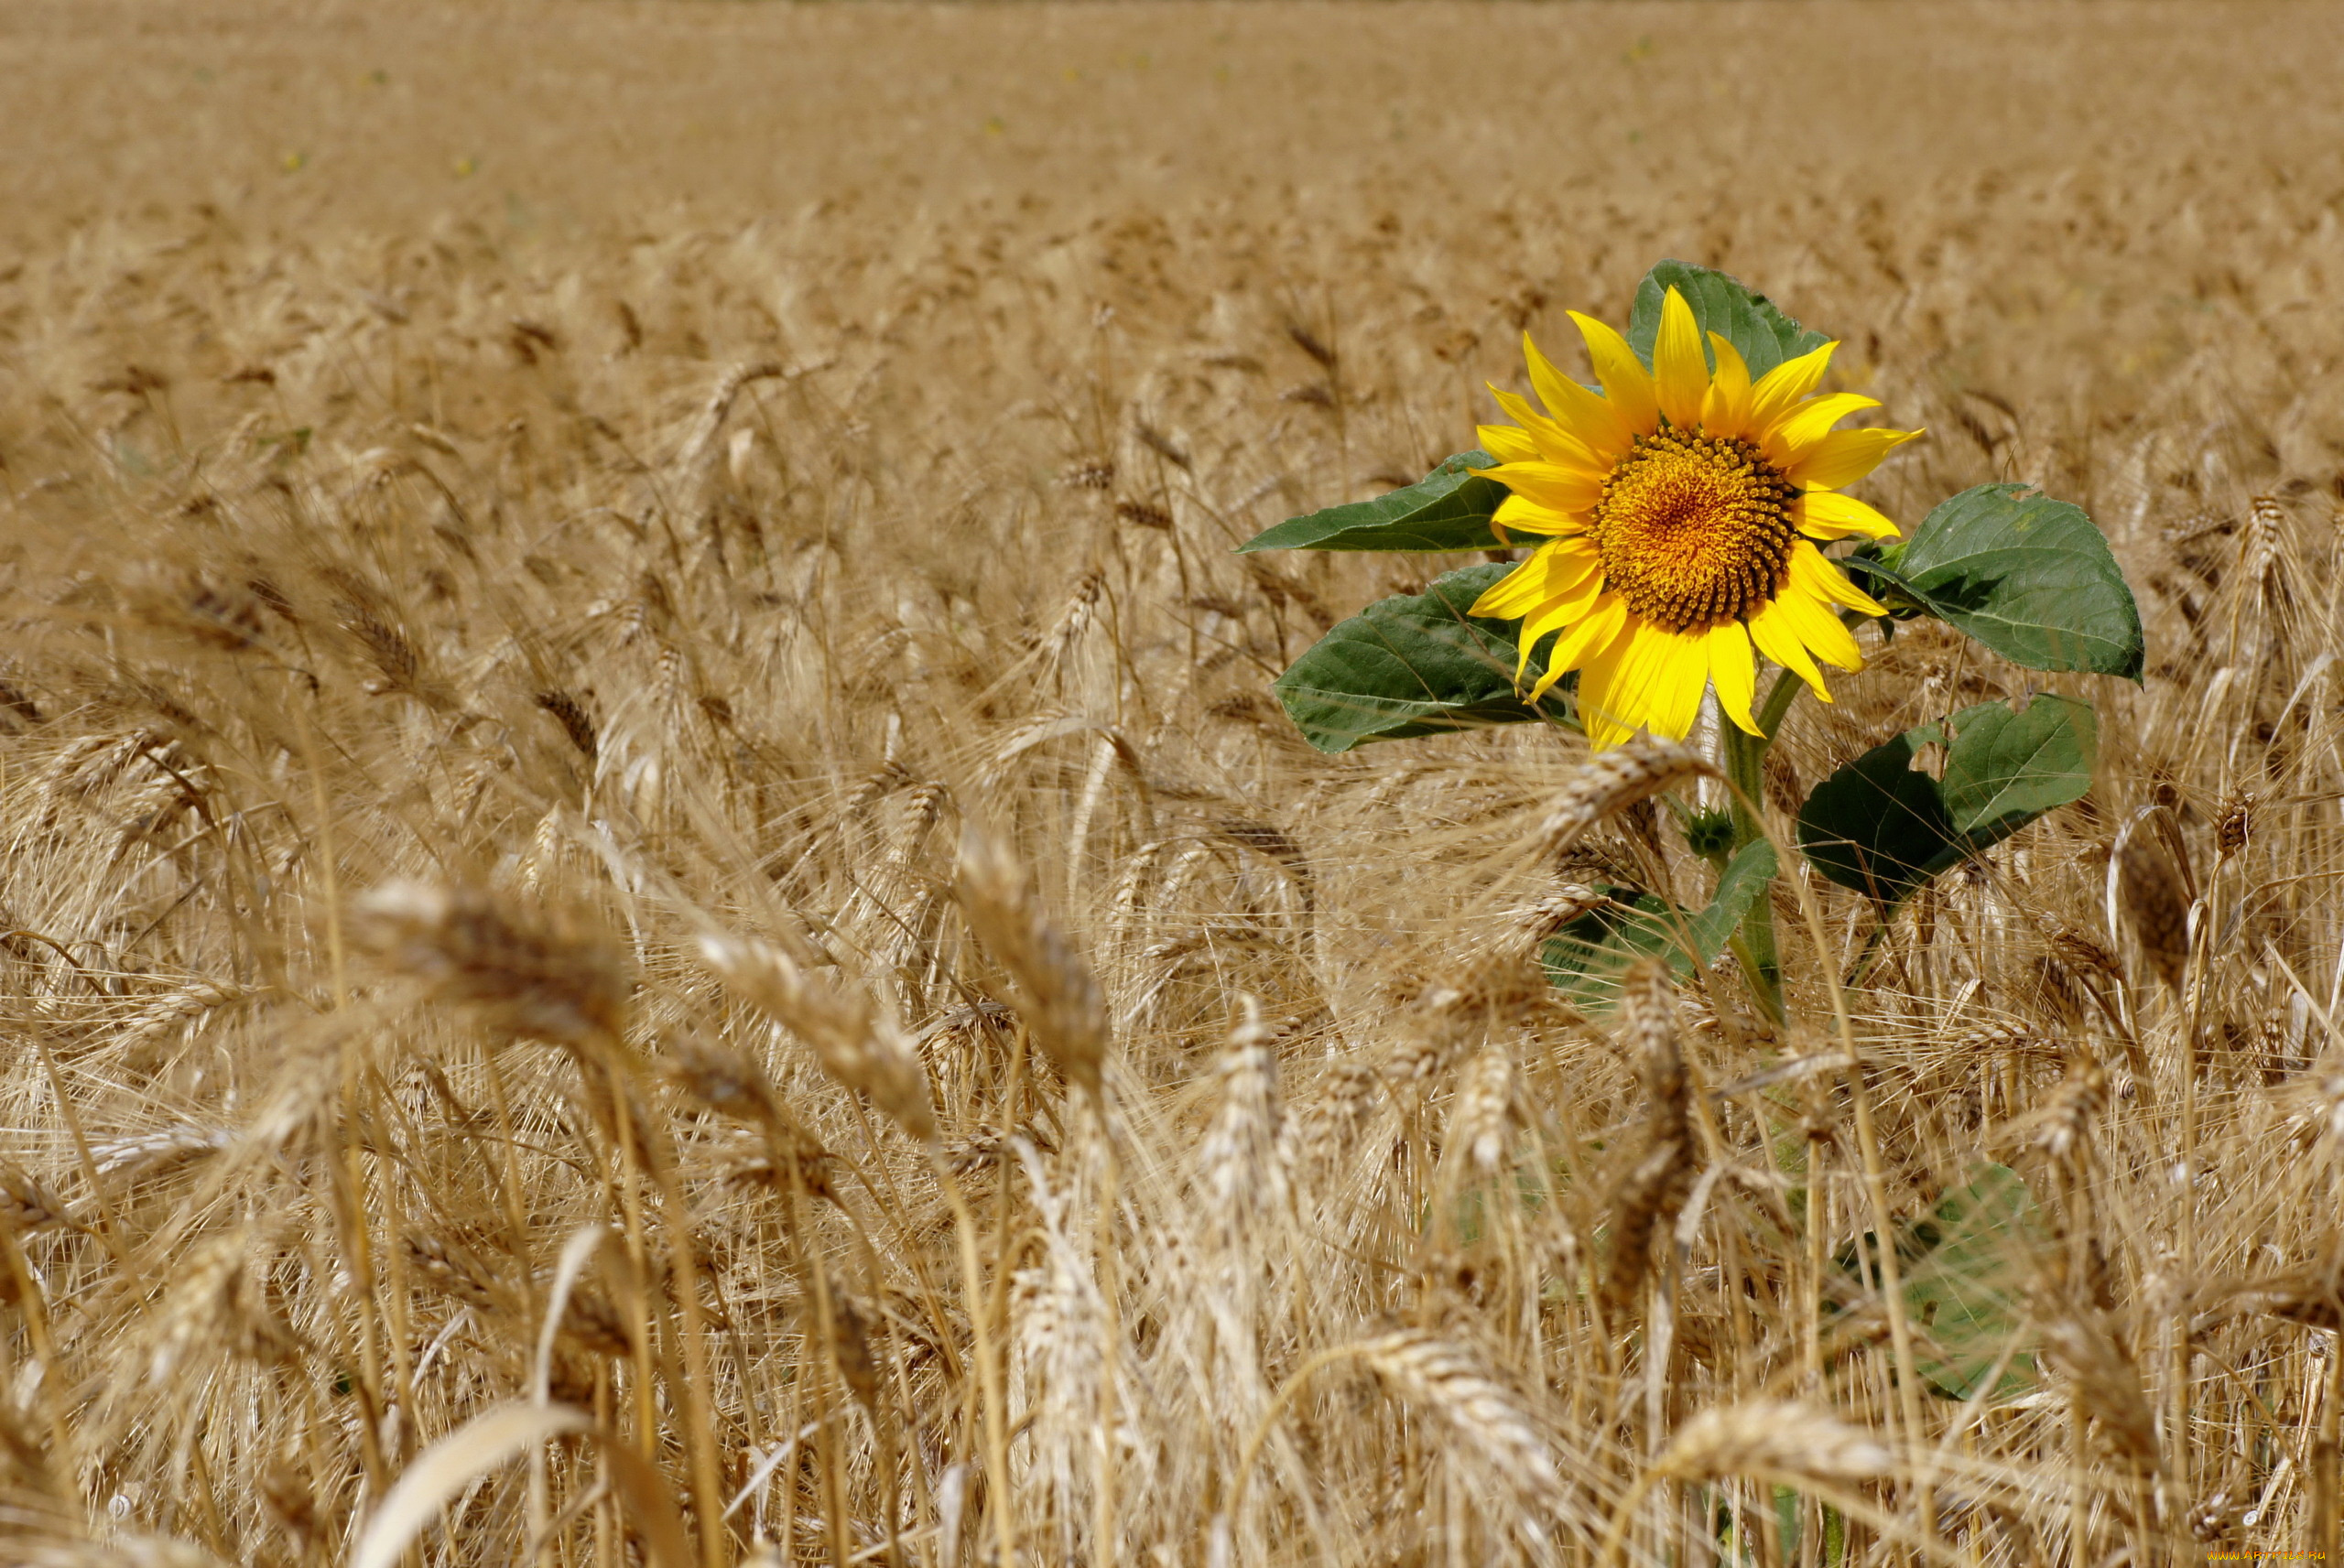 природа поле пшеница зерна солнце бесплатно